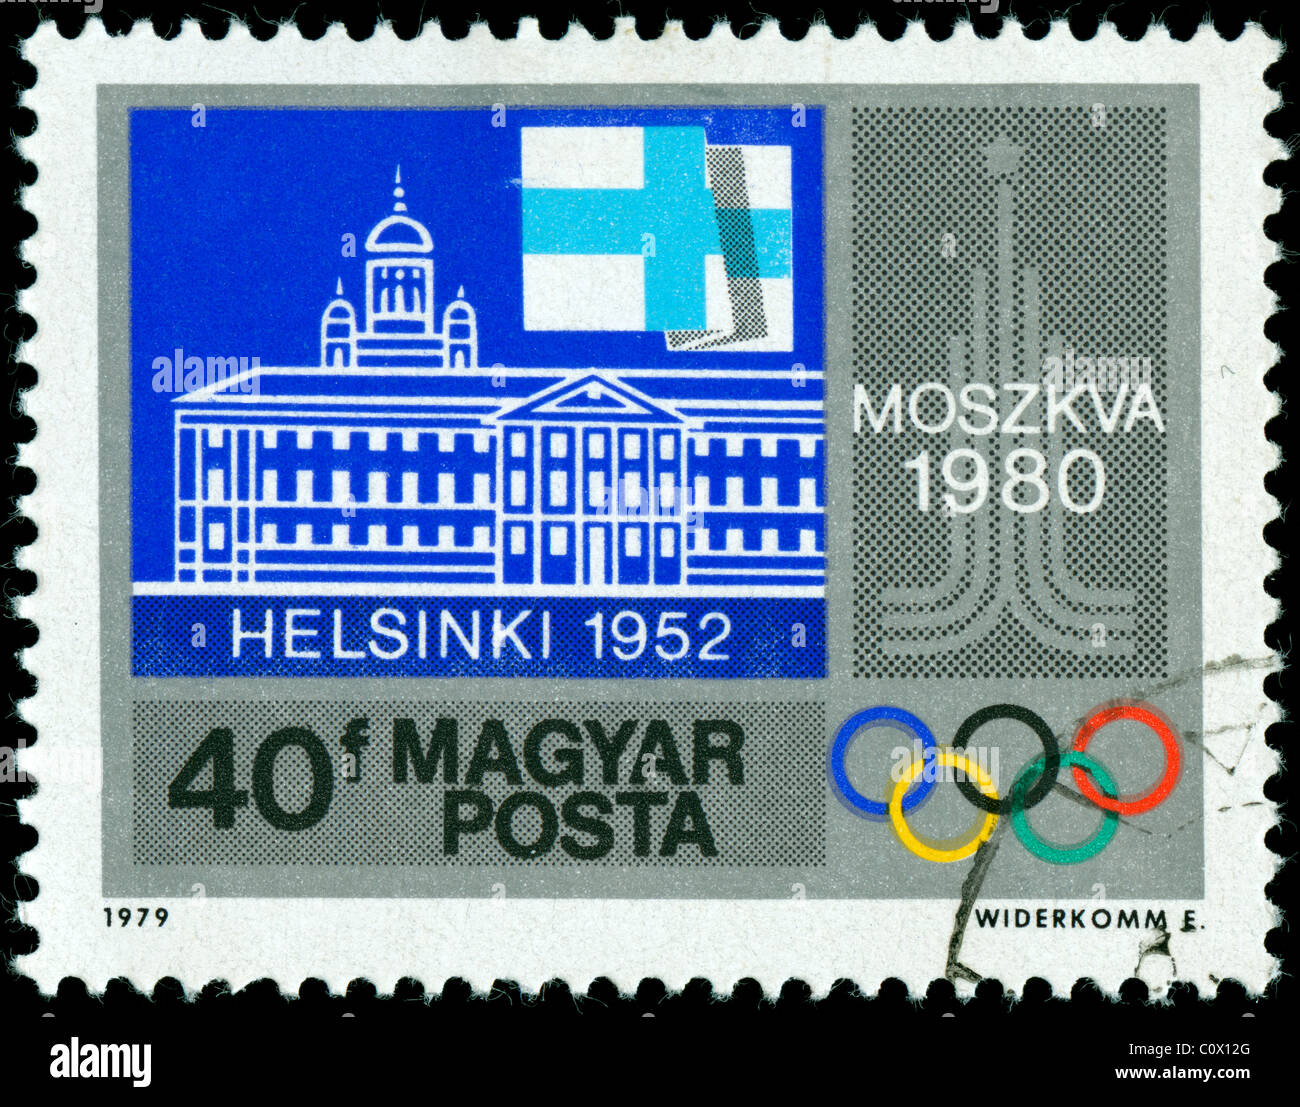 Timbre hongrois de 1979 commémorant les Jeux Olympiques à Helsinki et à Moscou Banque D'Images